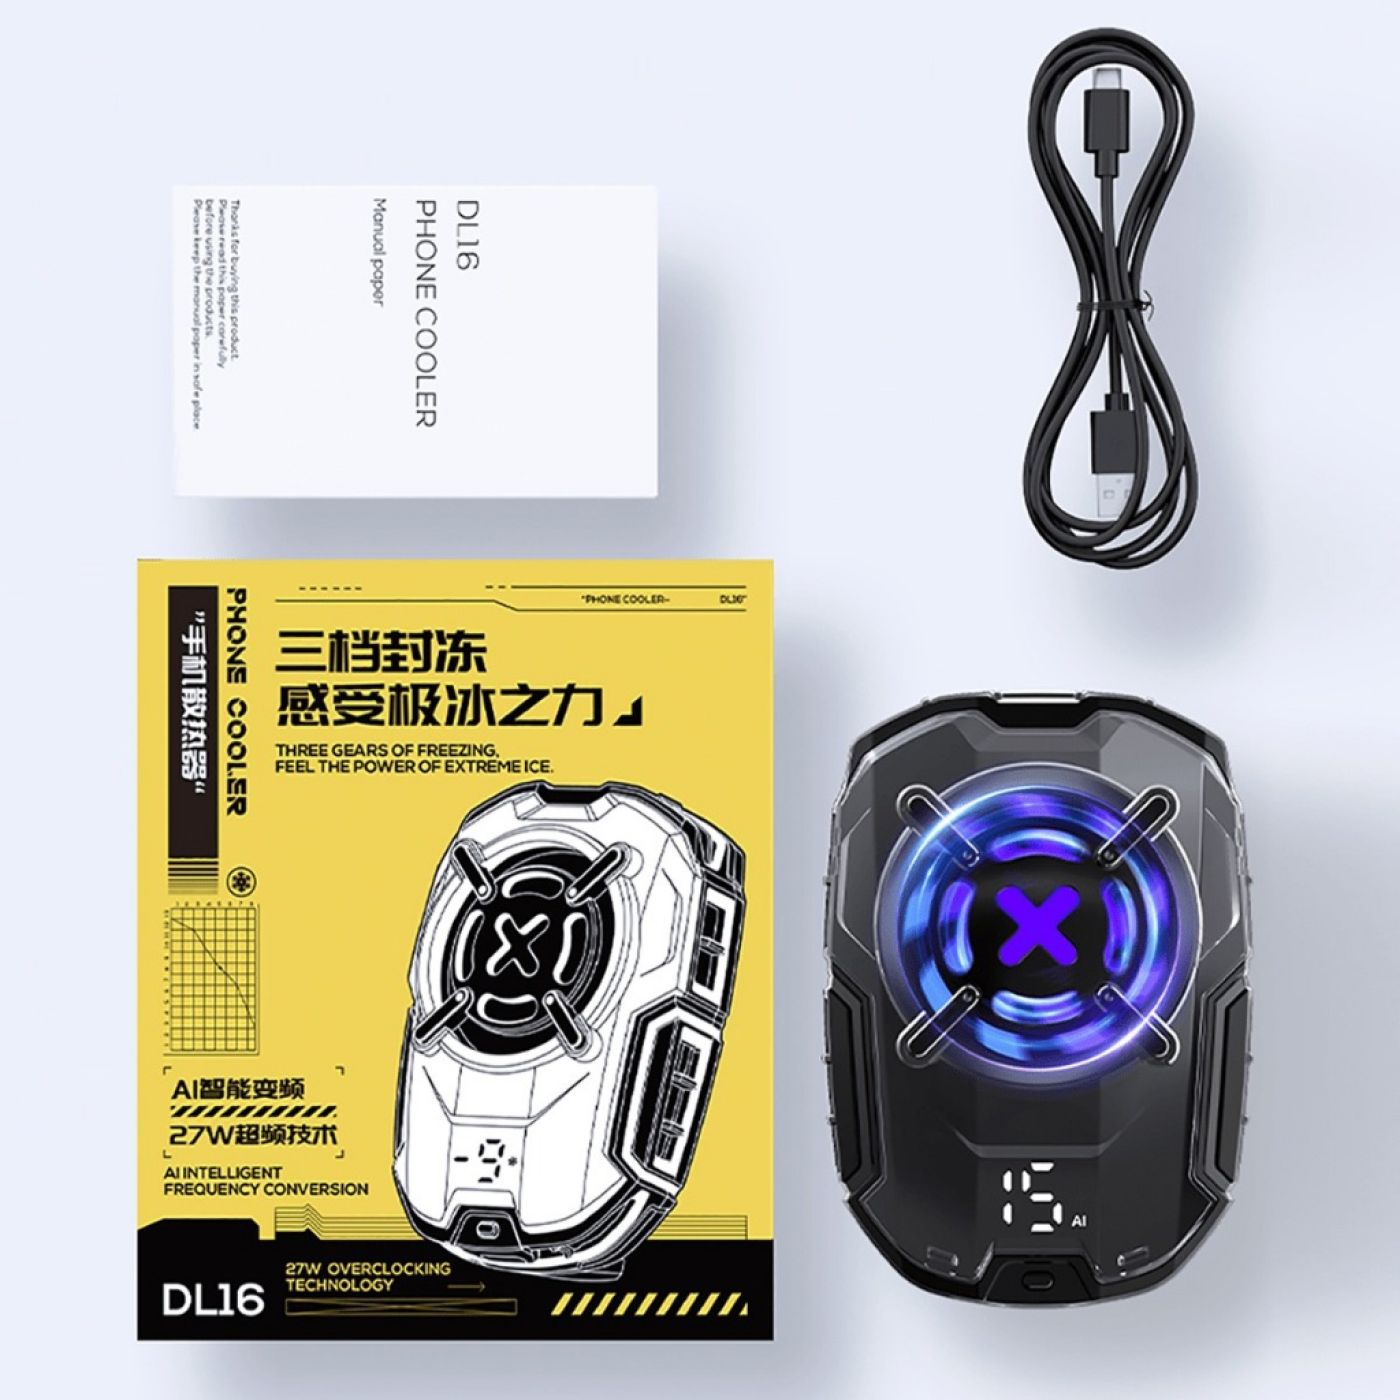 Quạt tản nhiệt điện thoại Memo - DL16 (BH Lỗi 1 Đổi 1) - Đèn LED RGB Gaming